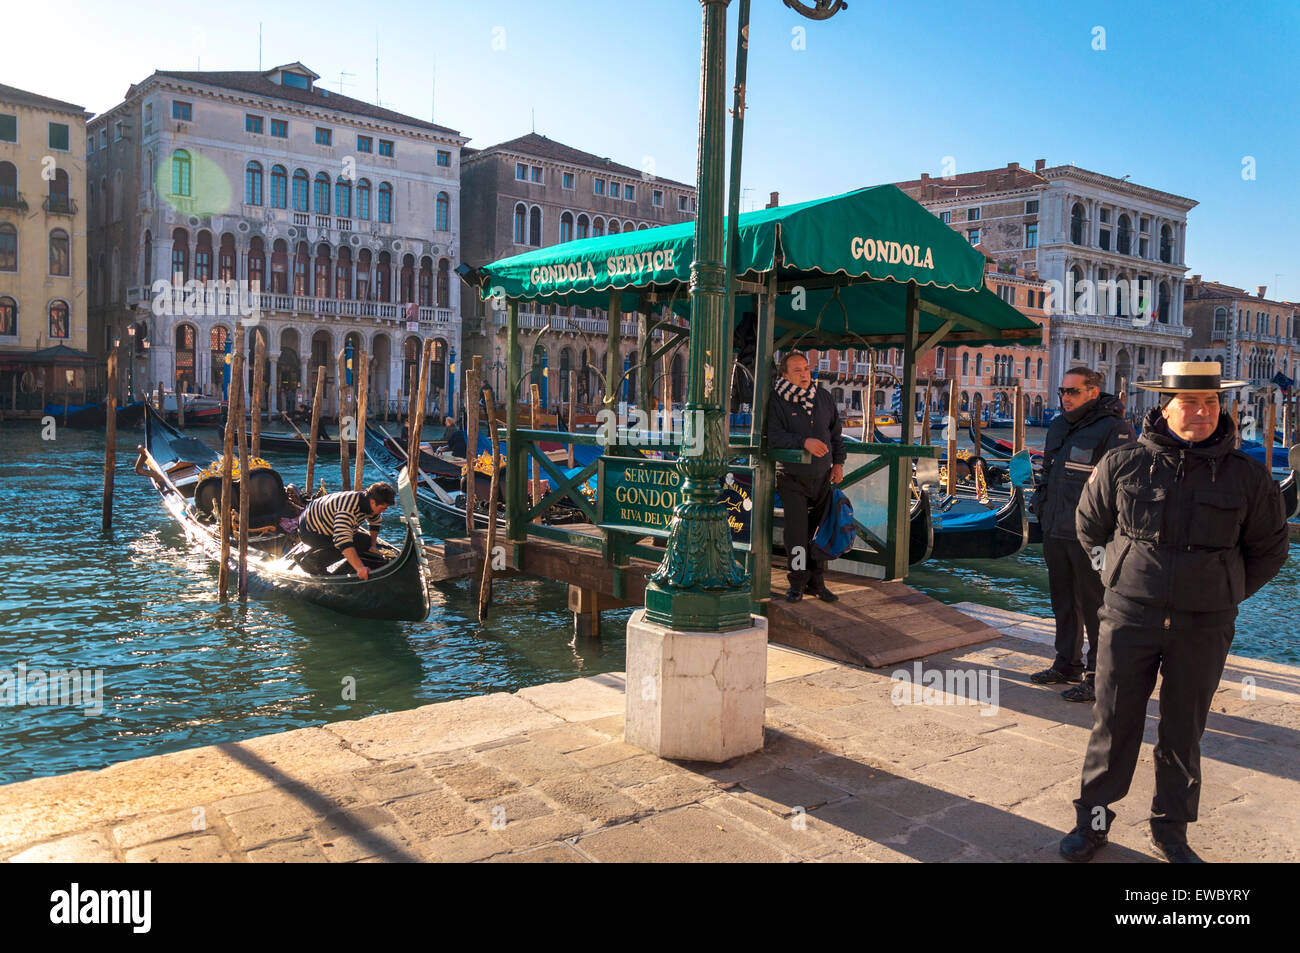 Station de gondole sur le Grand Canal à Venise Venezia Italie Banque D'Images